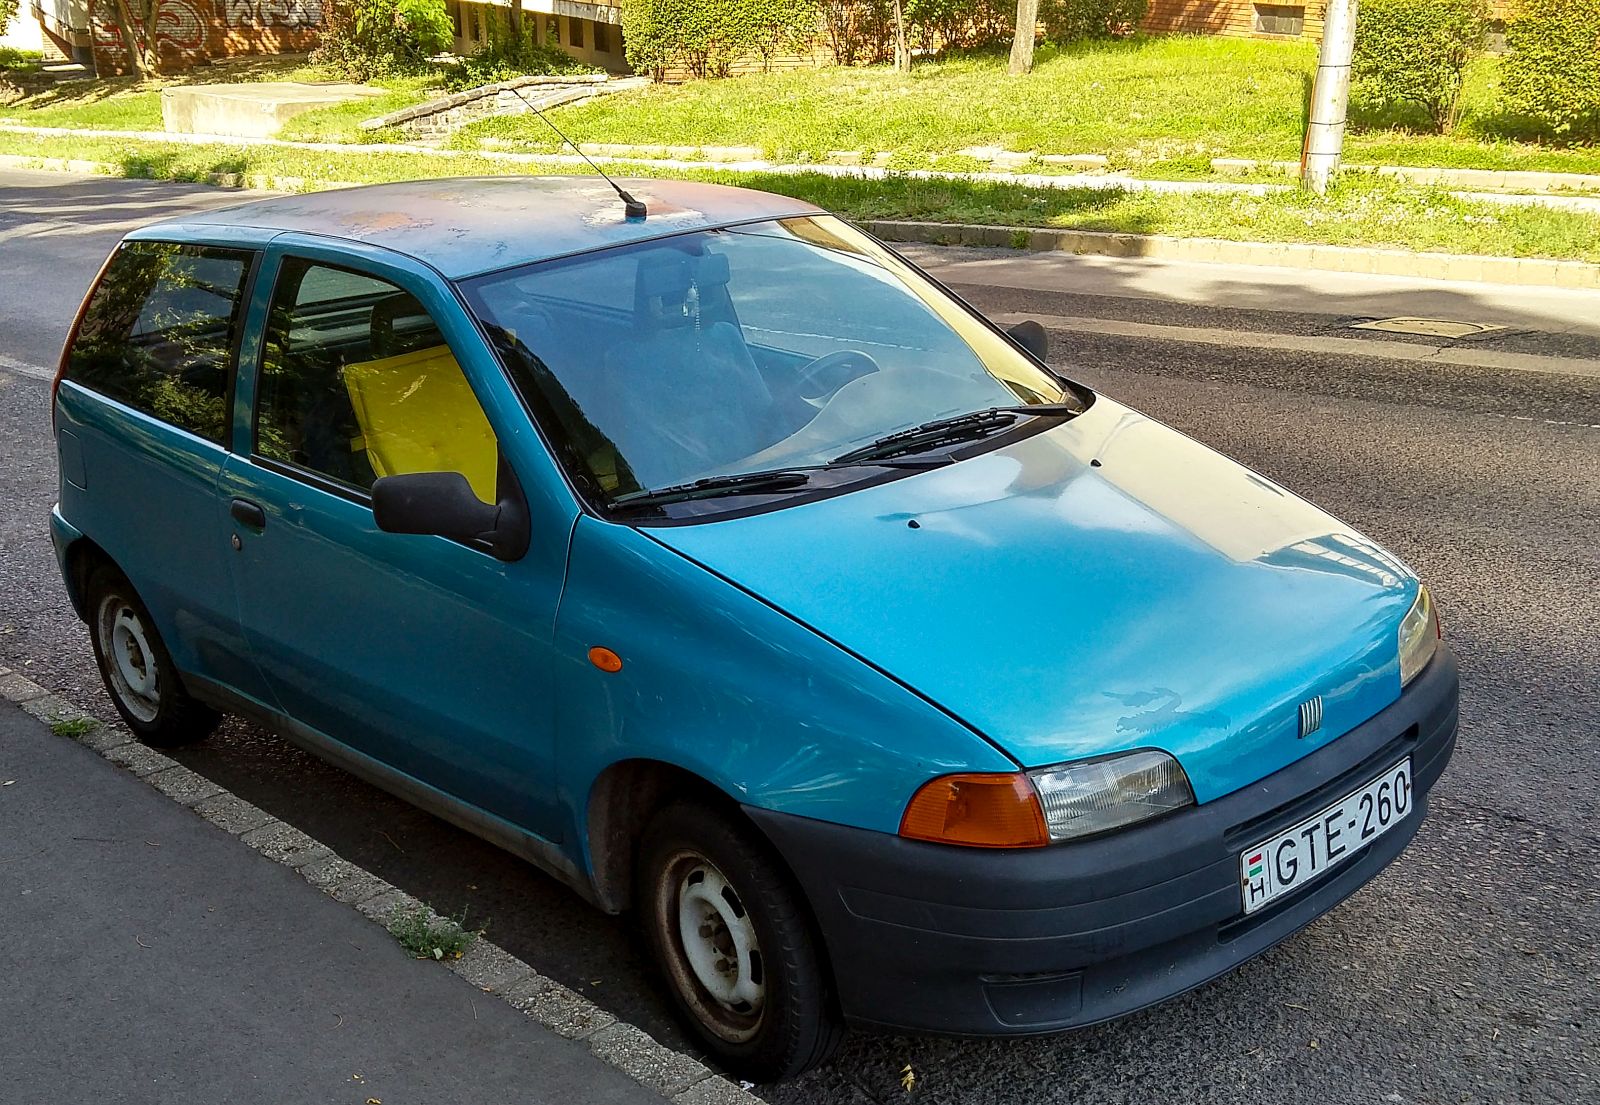 Fiat Punto in der Farbe Azzurro Rialto. Foto: 08.2021.